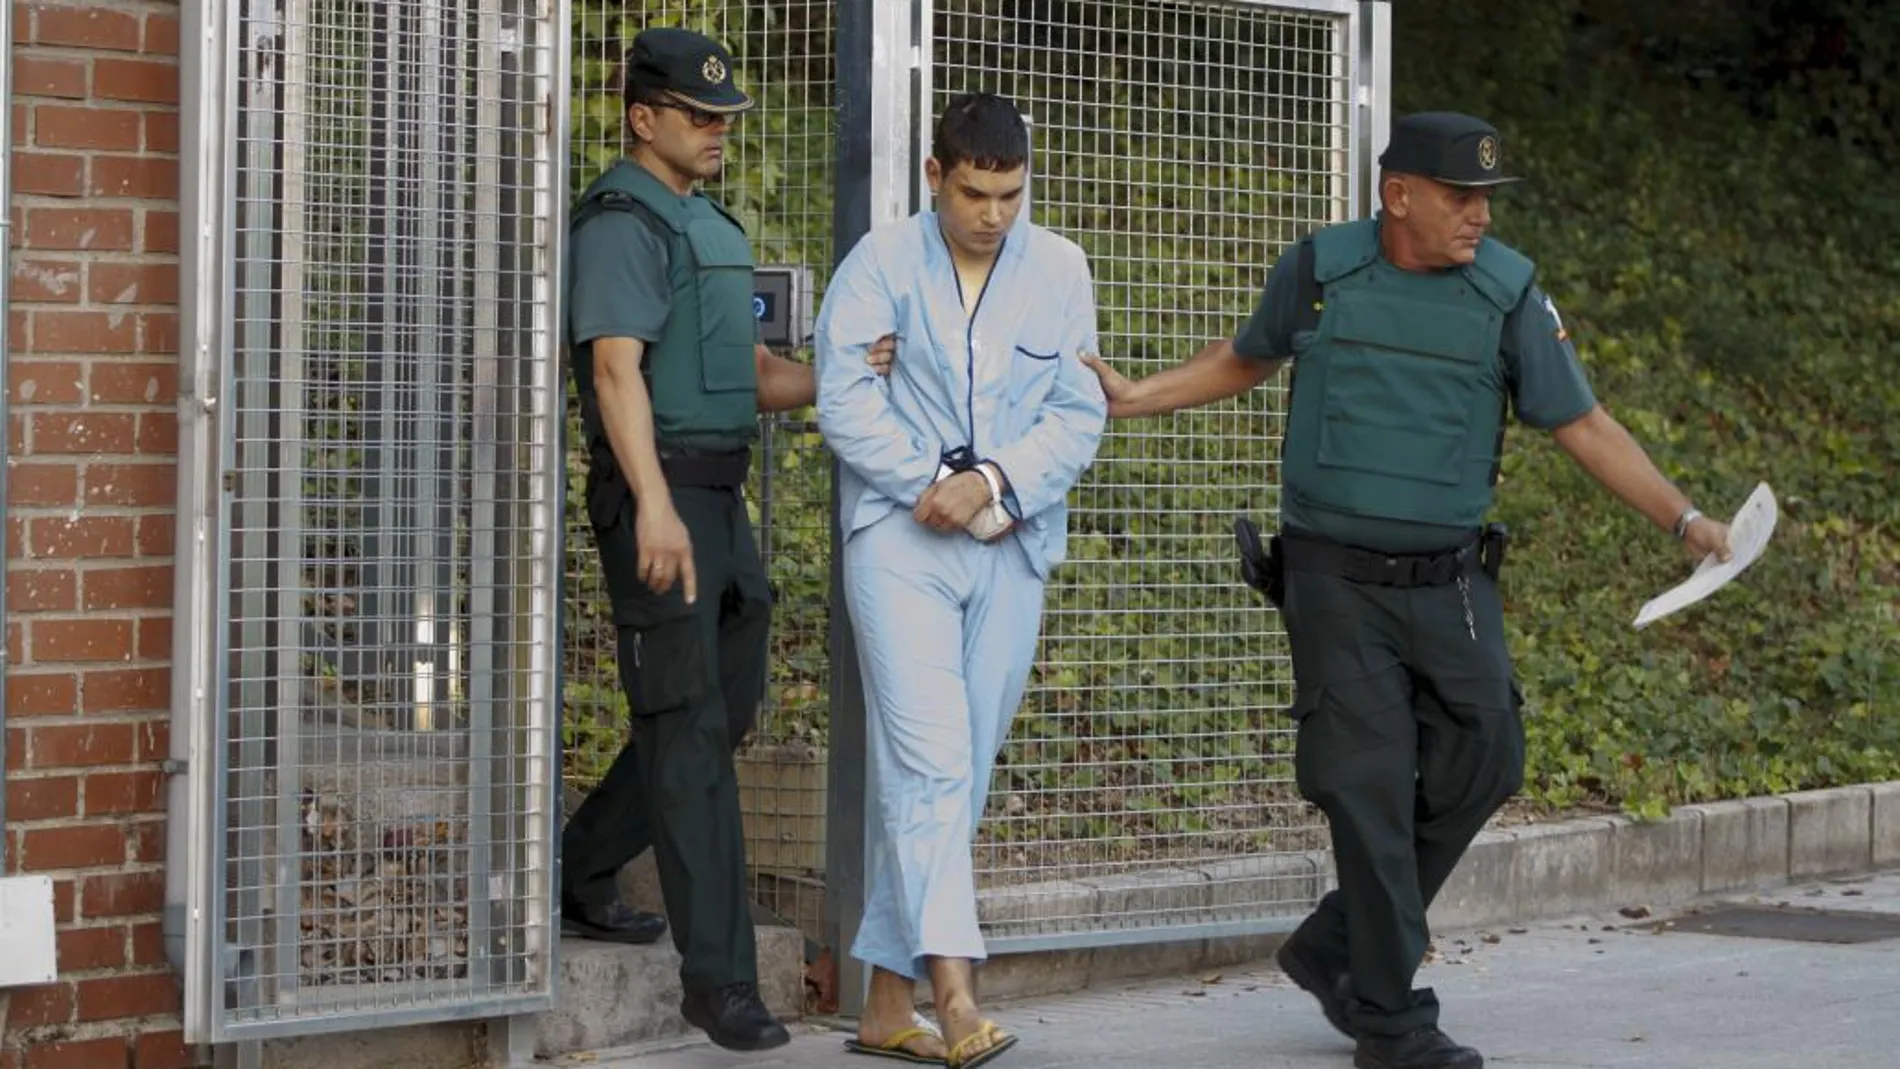 Mohamed Houli Chemlal, detenido en relación con los atentados yihadistas cometidos Barcelona y Cambrils (Tarragona).